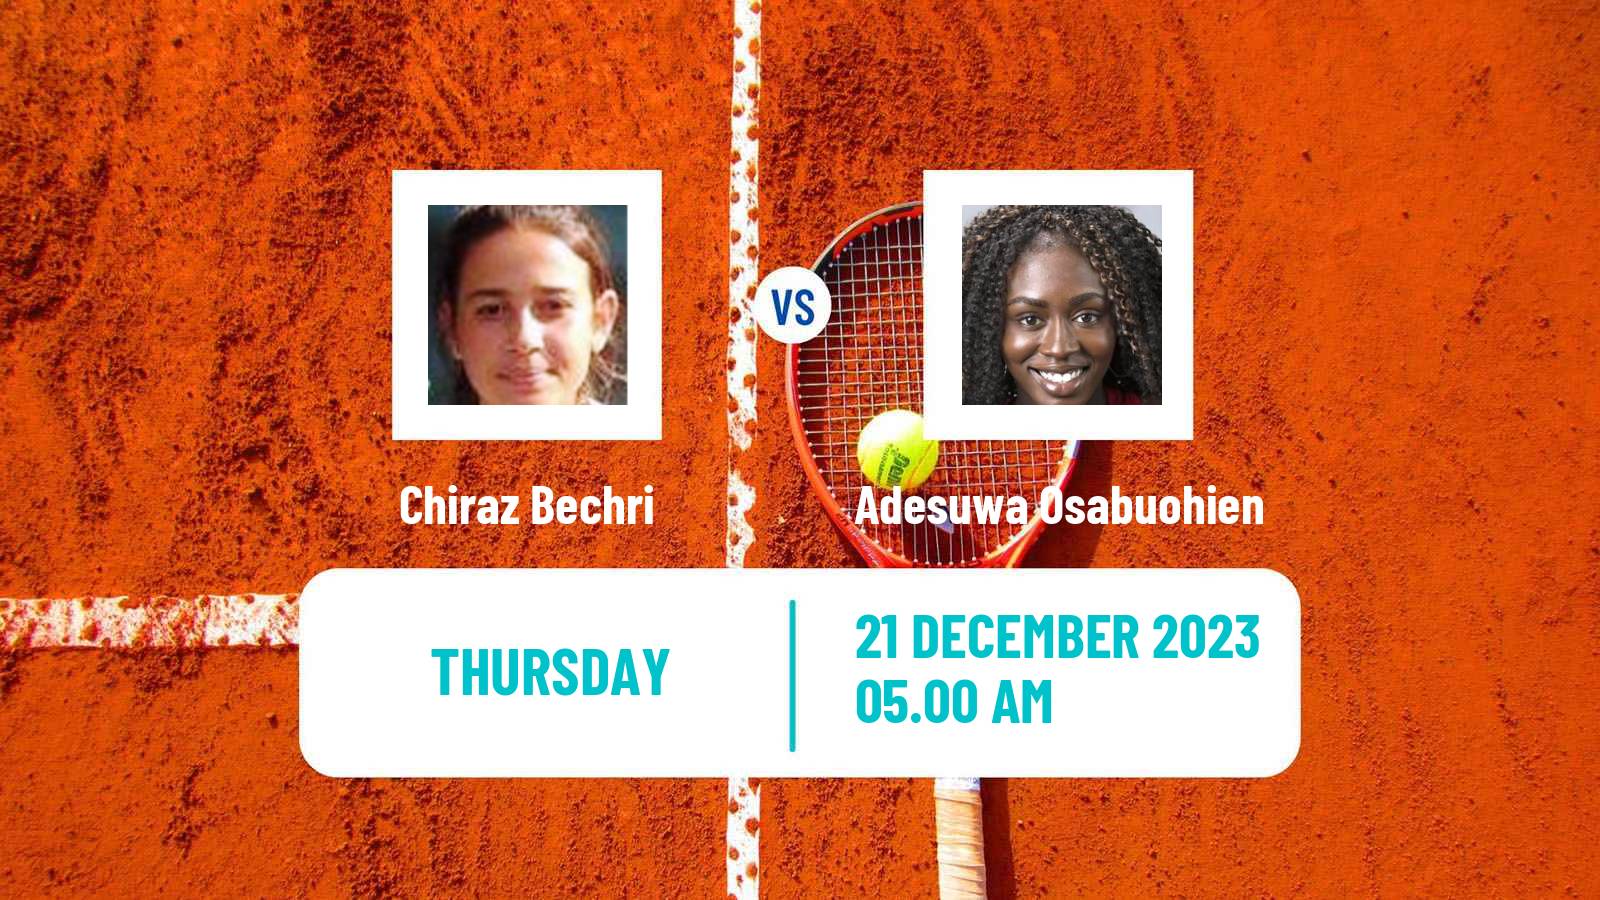 Tennis ITF W15 Monastir 43 Women Chiraz Bechri - Adesuwa Osabuohien